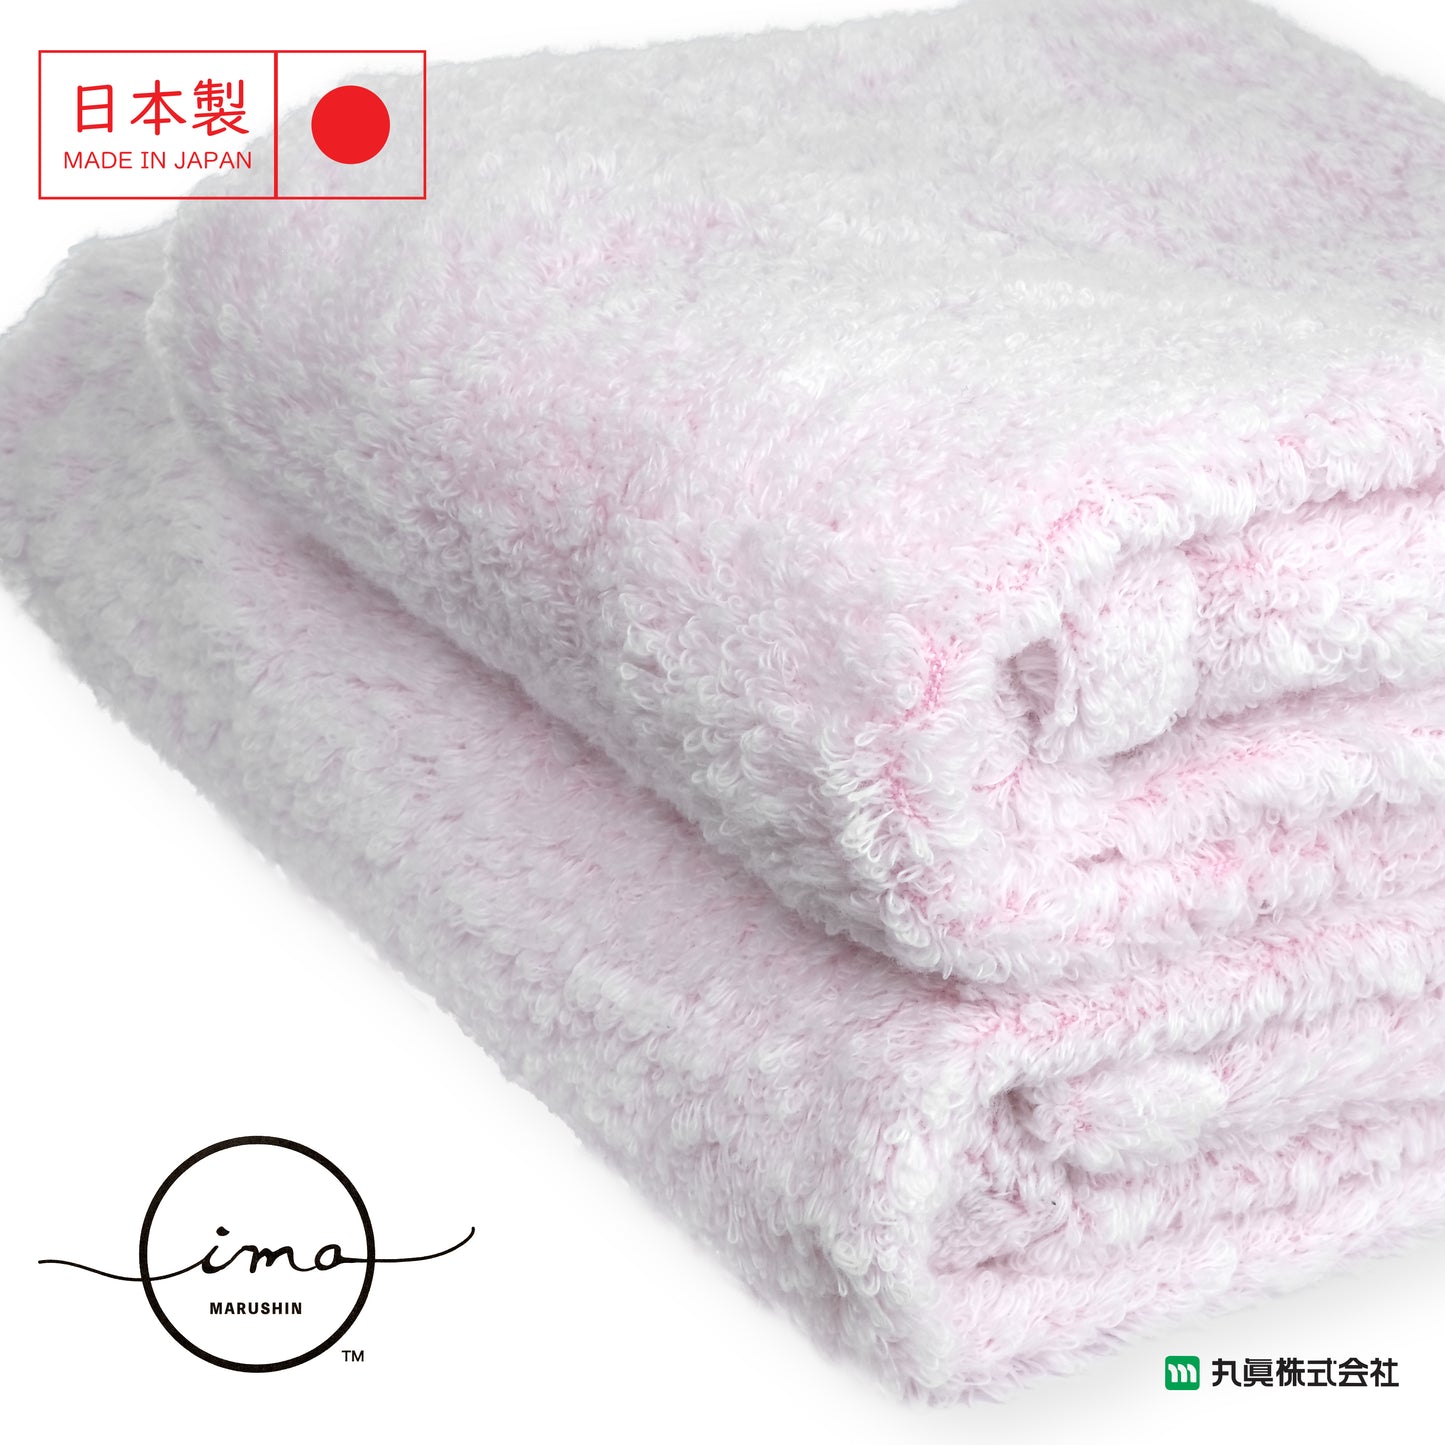 IMA Heaven Zero Twisted Yarn Towel